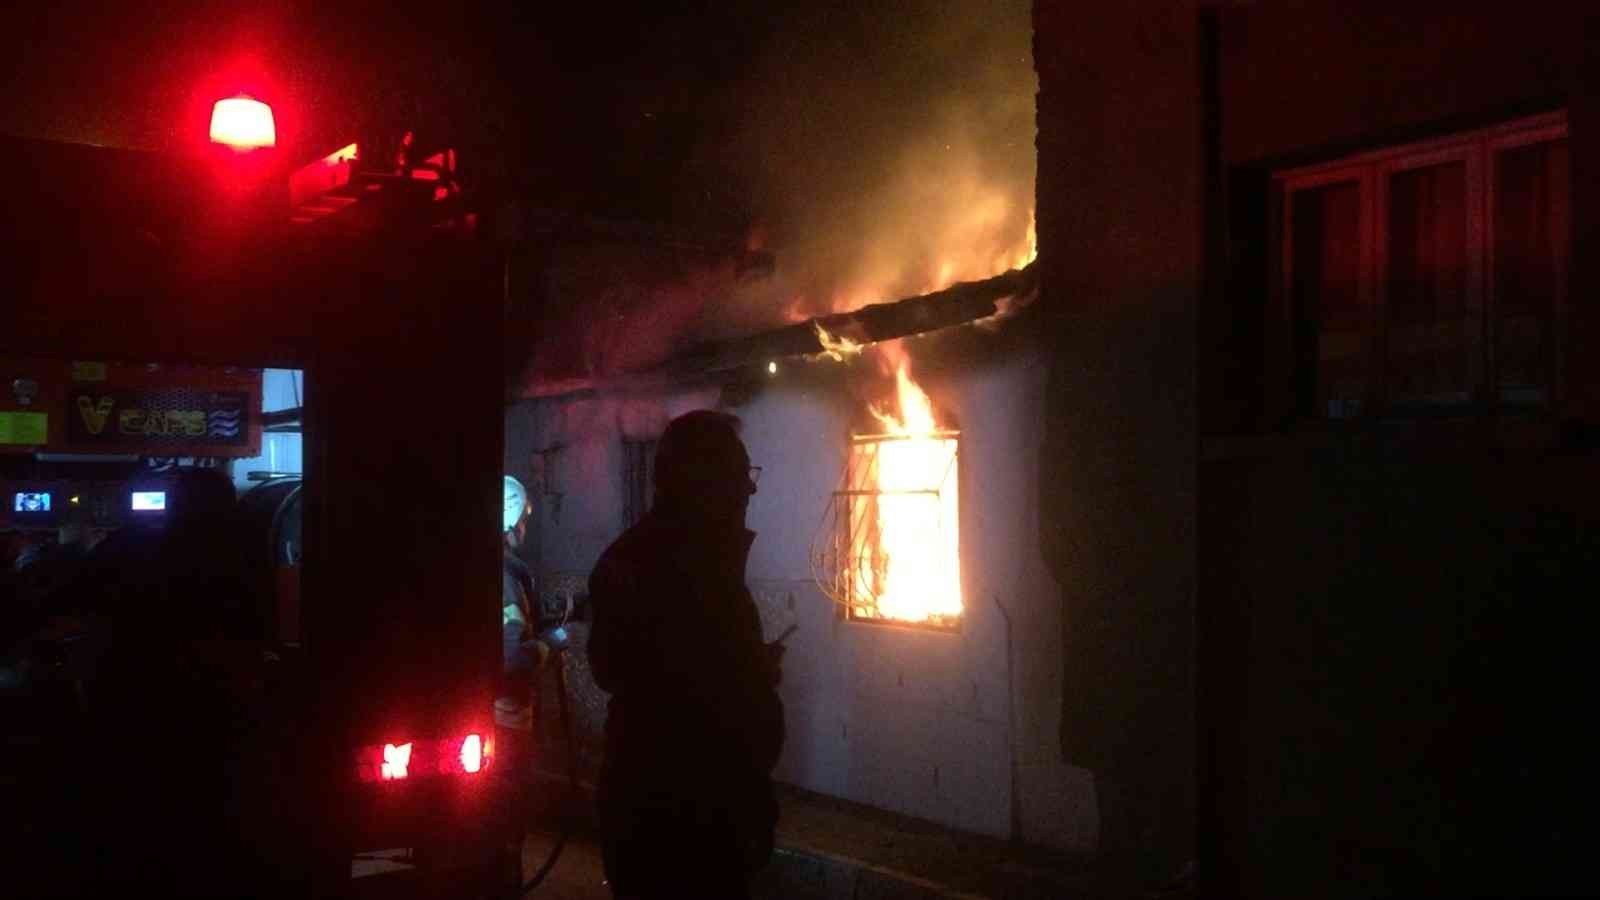 Manisa’da korkutan ev yangını #manisa